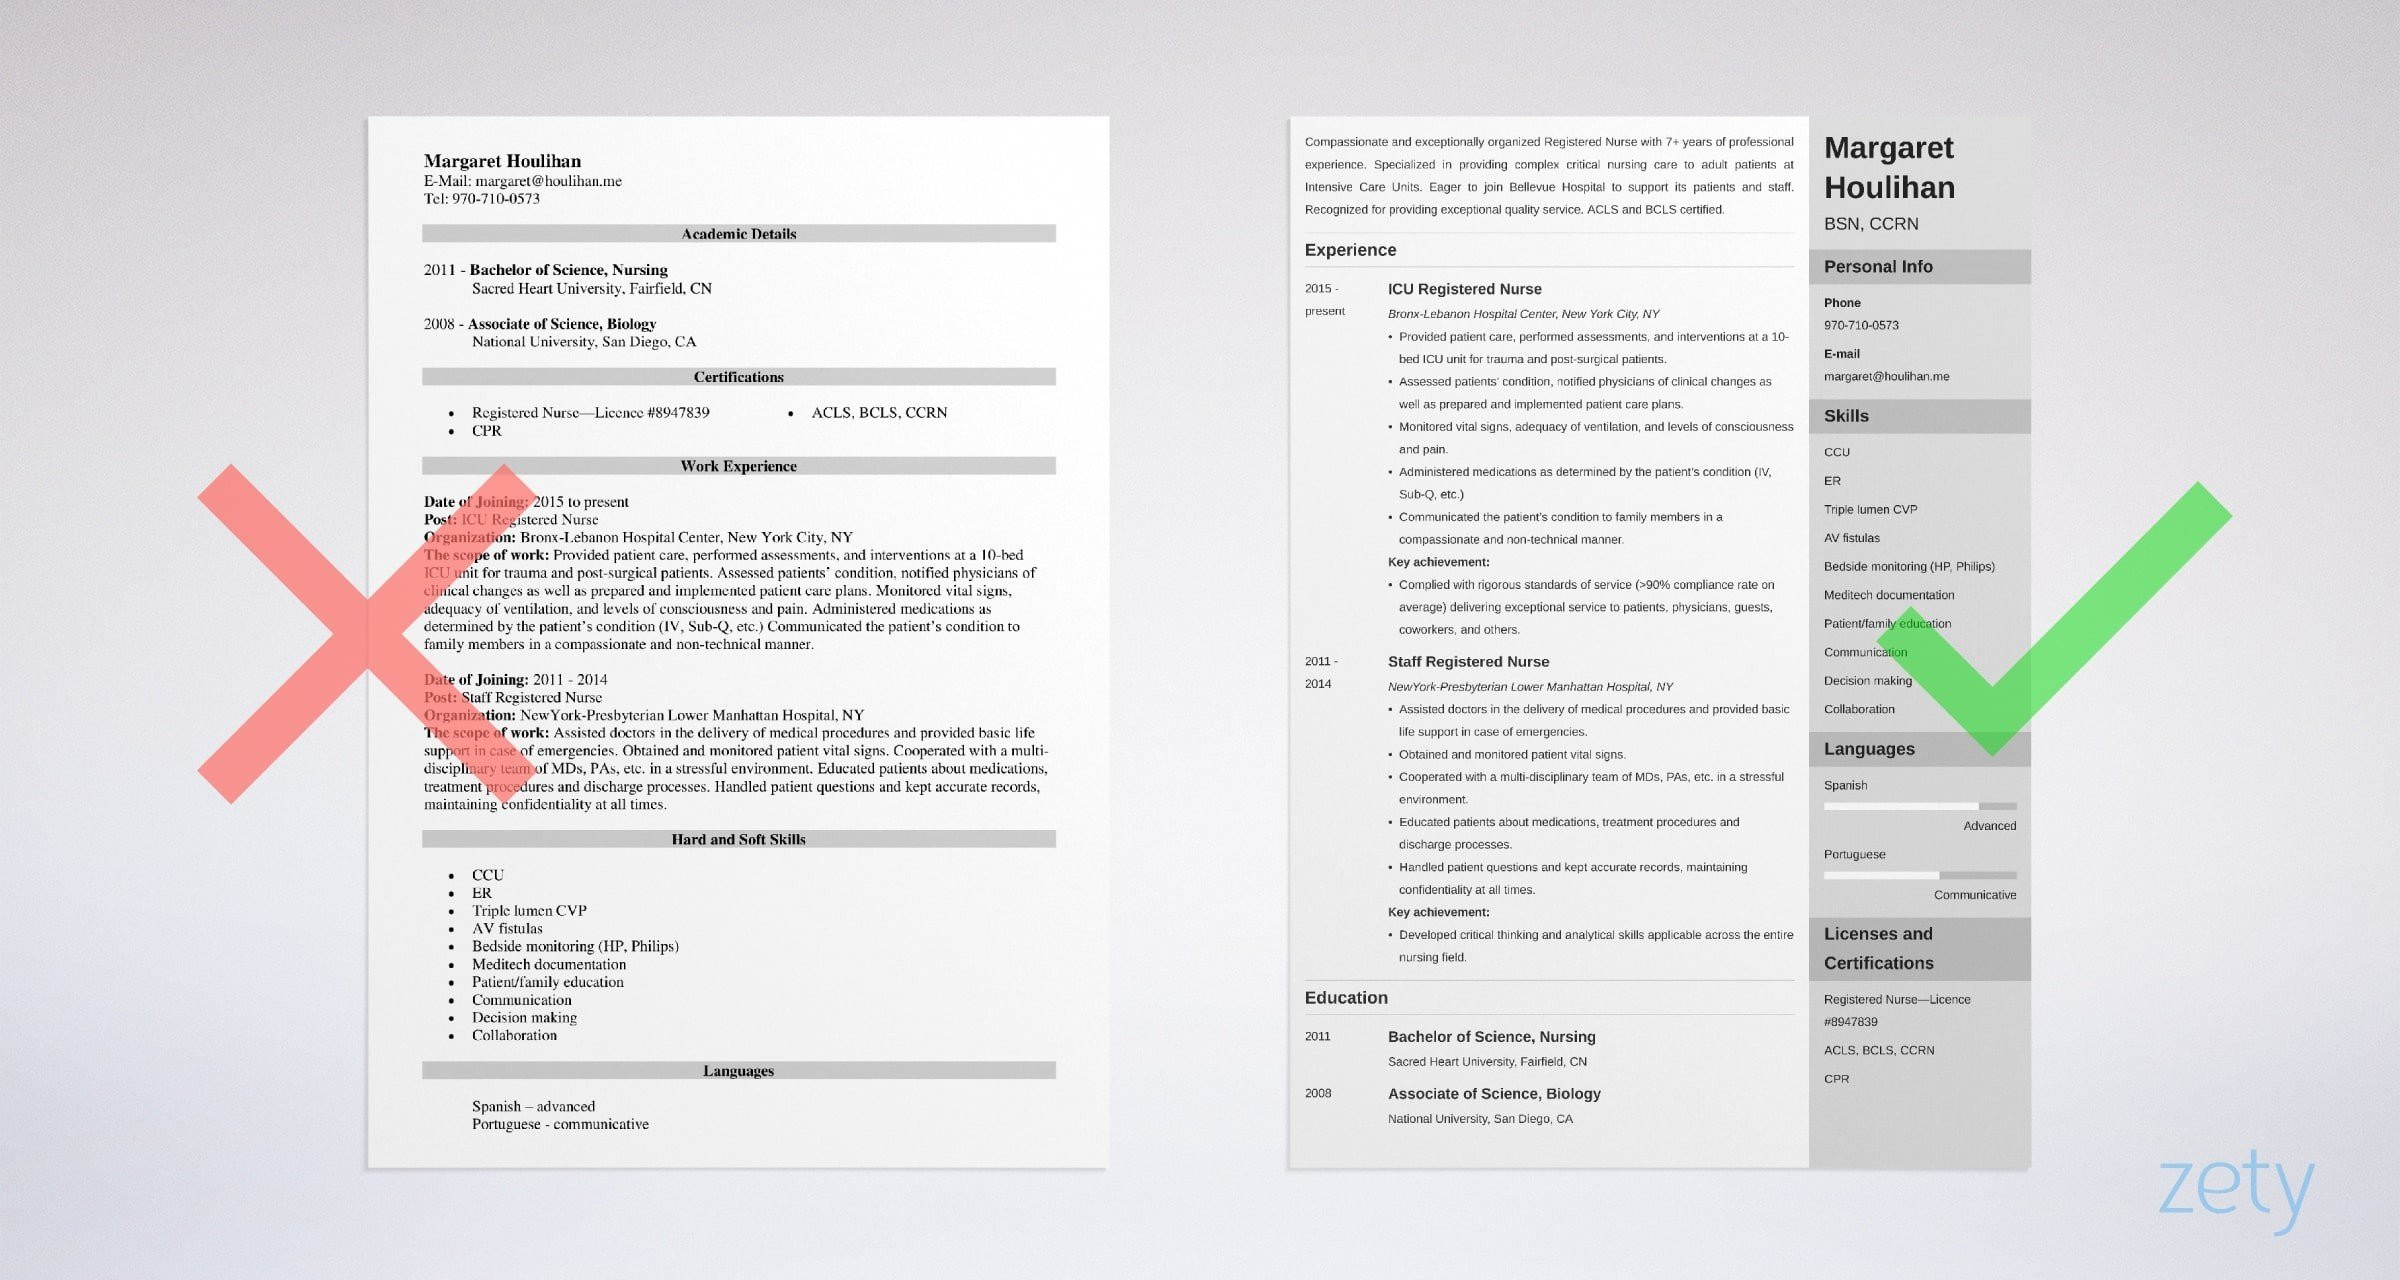 Sample Resume for Nurses In Uae Icu Nurse Resume Sample & Sicu / Icu Job Description Tips